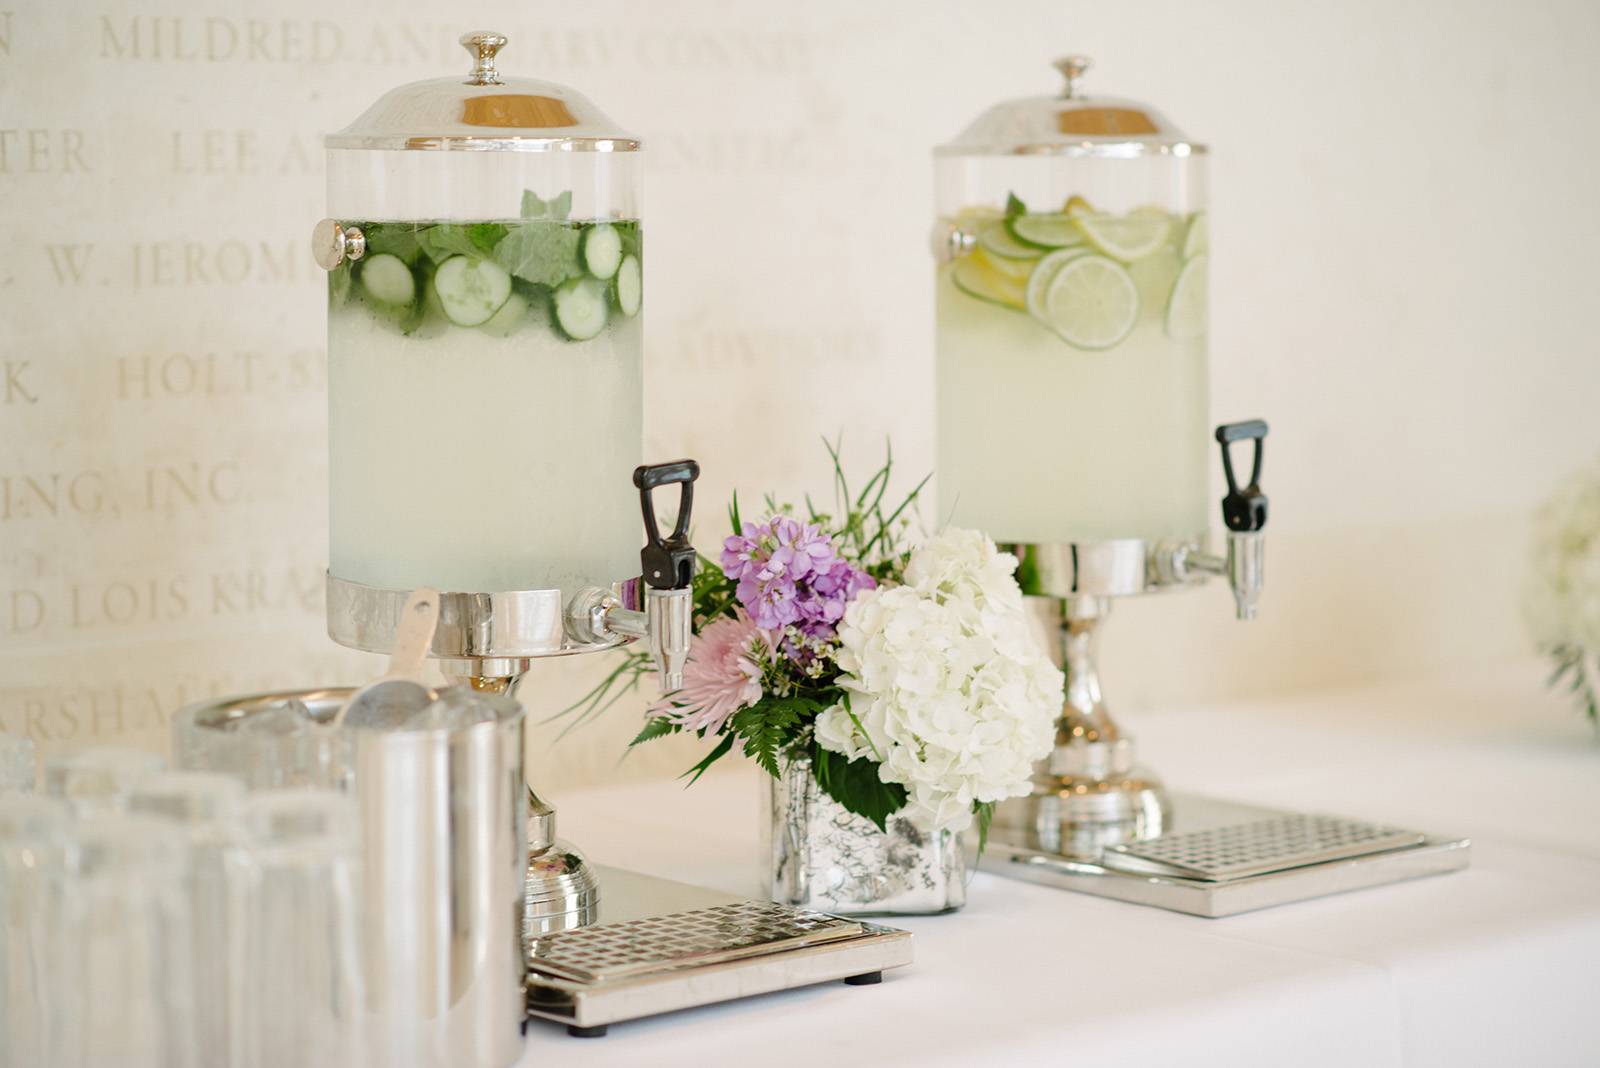 wedding beverage station, drink station, lemonade, limeade, infused water station